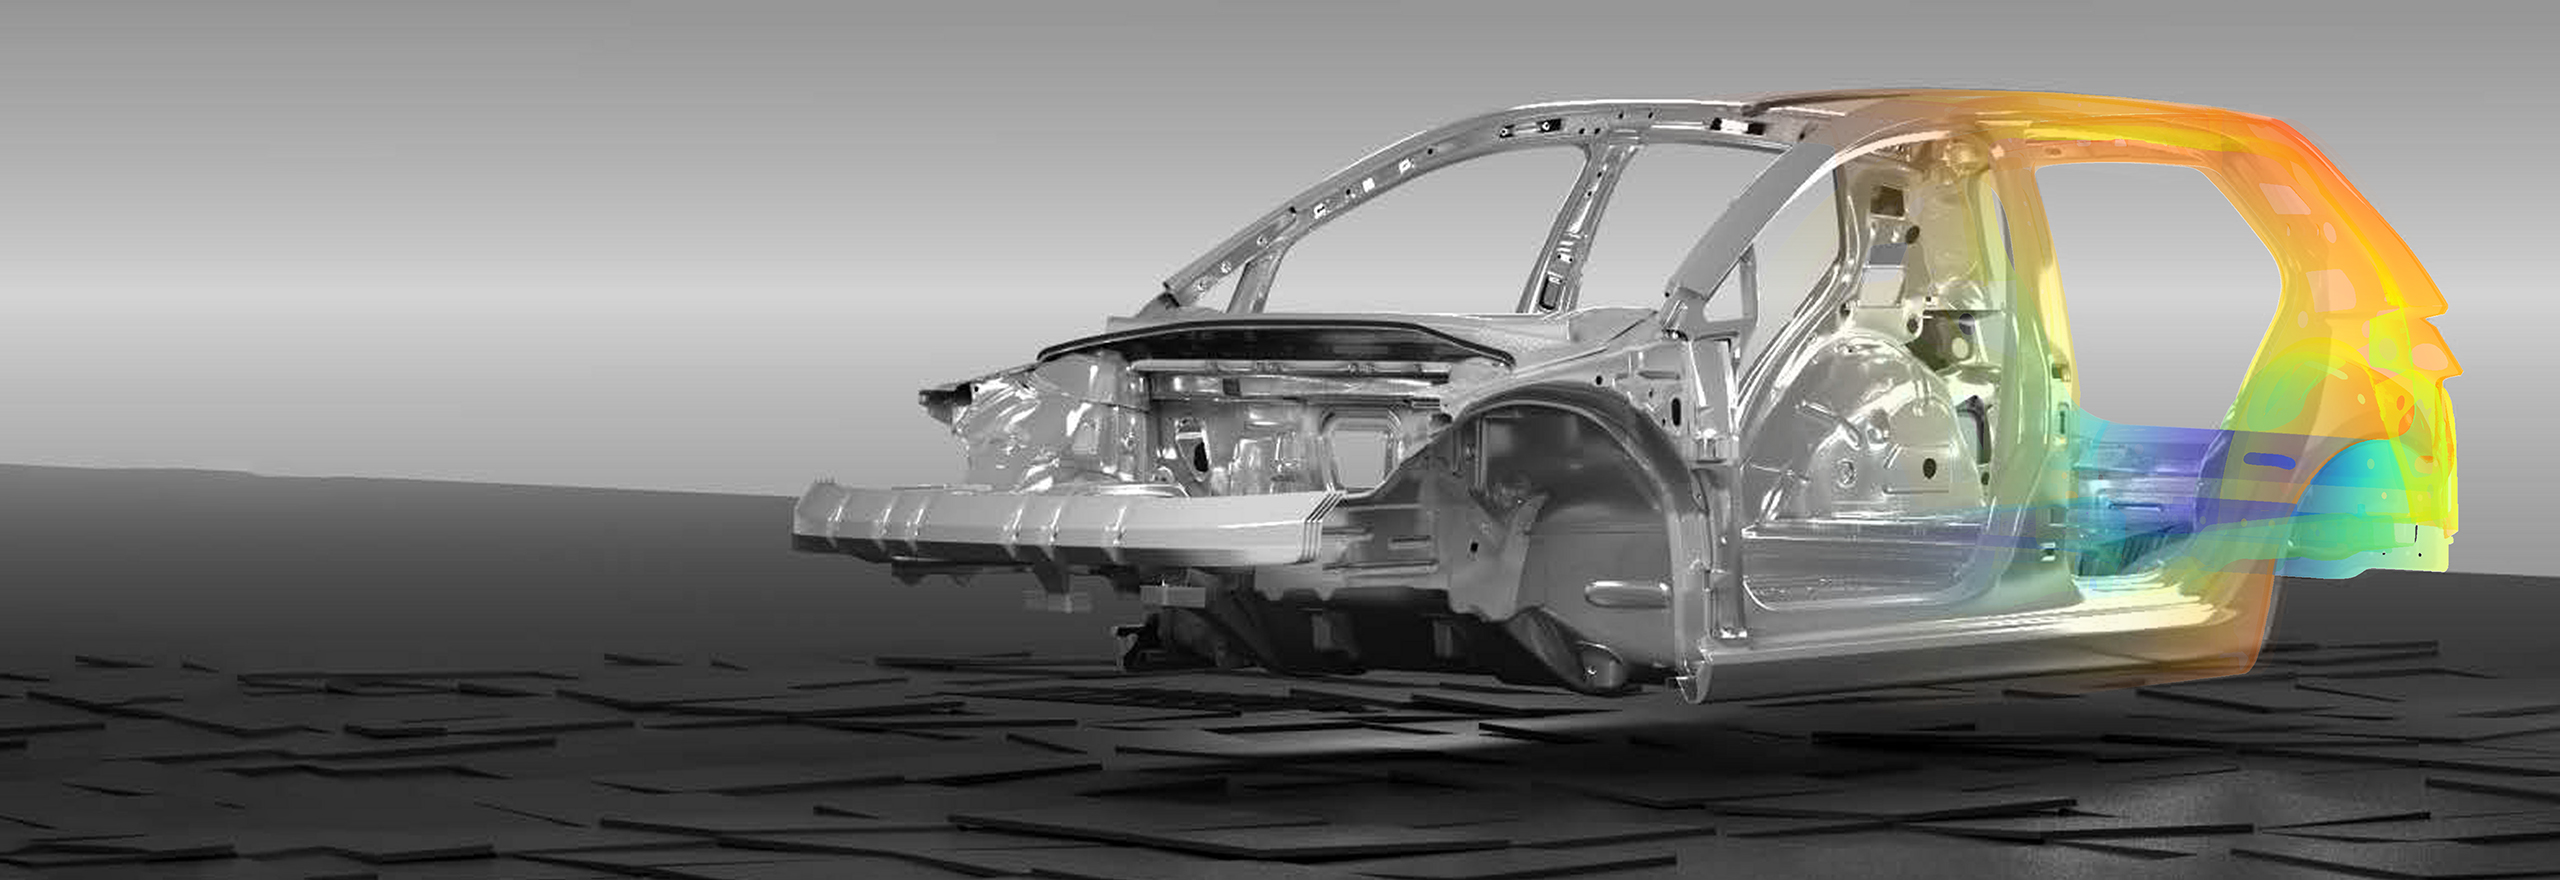 scan de carrosserie de voiture avec un logiciel romax